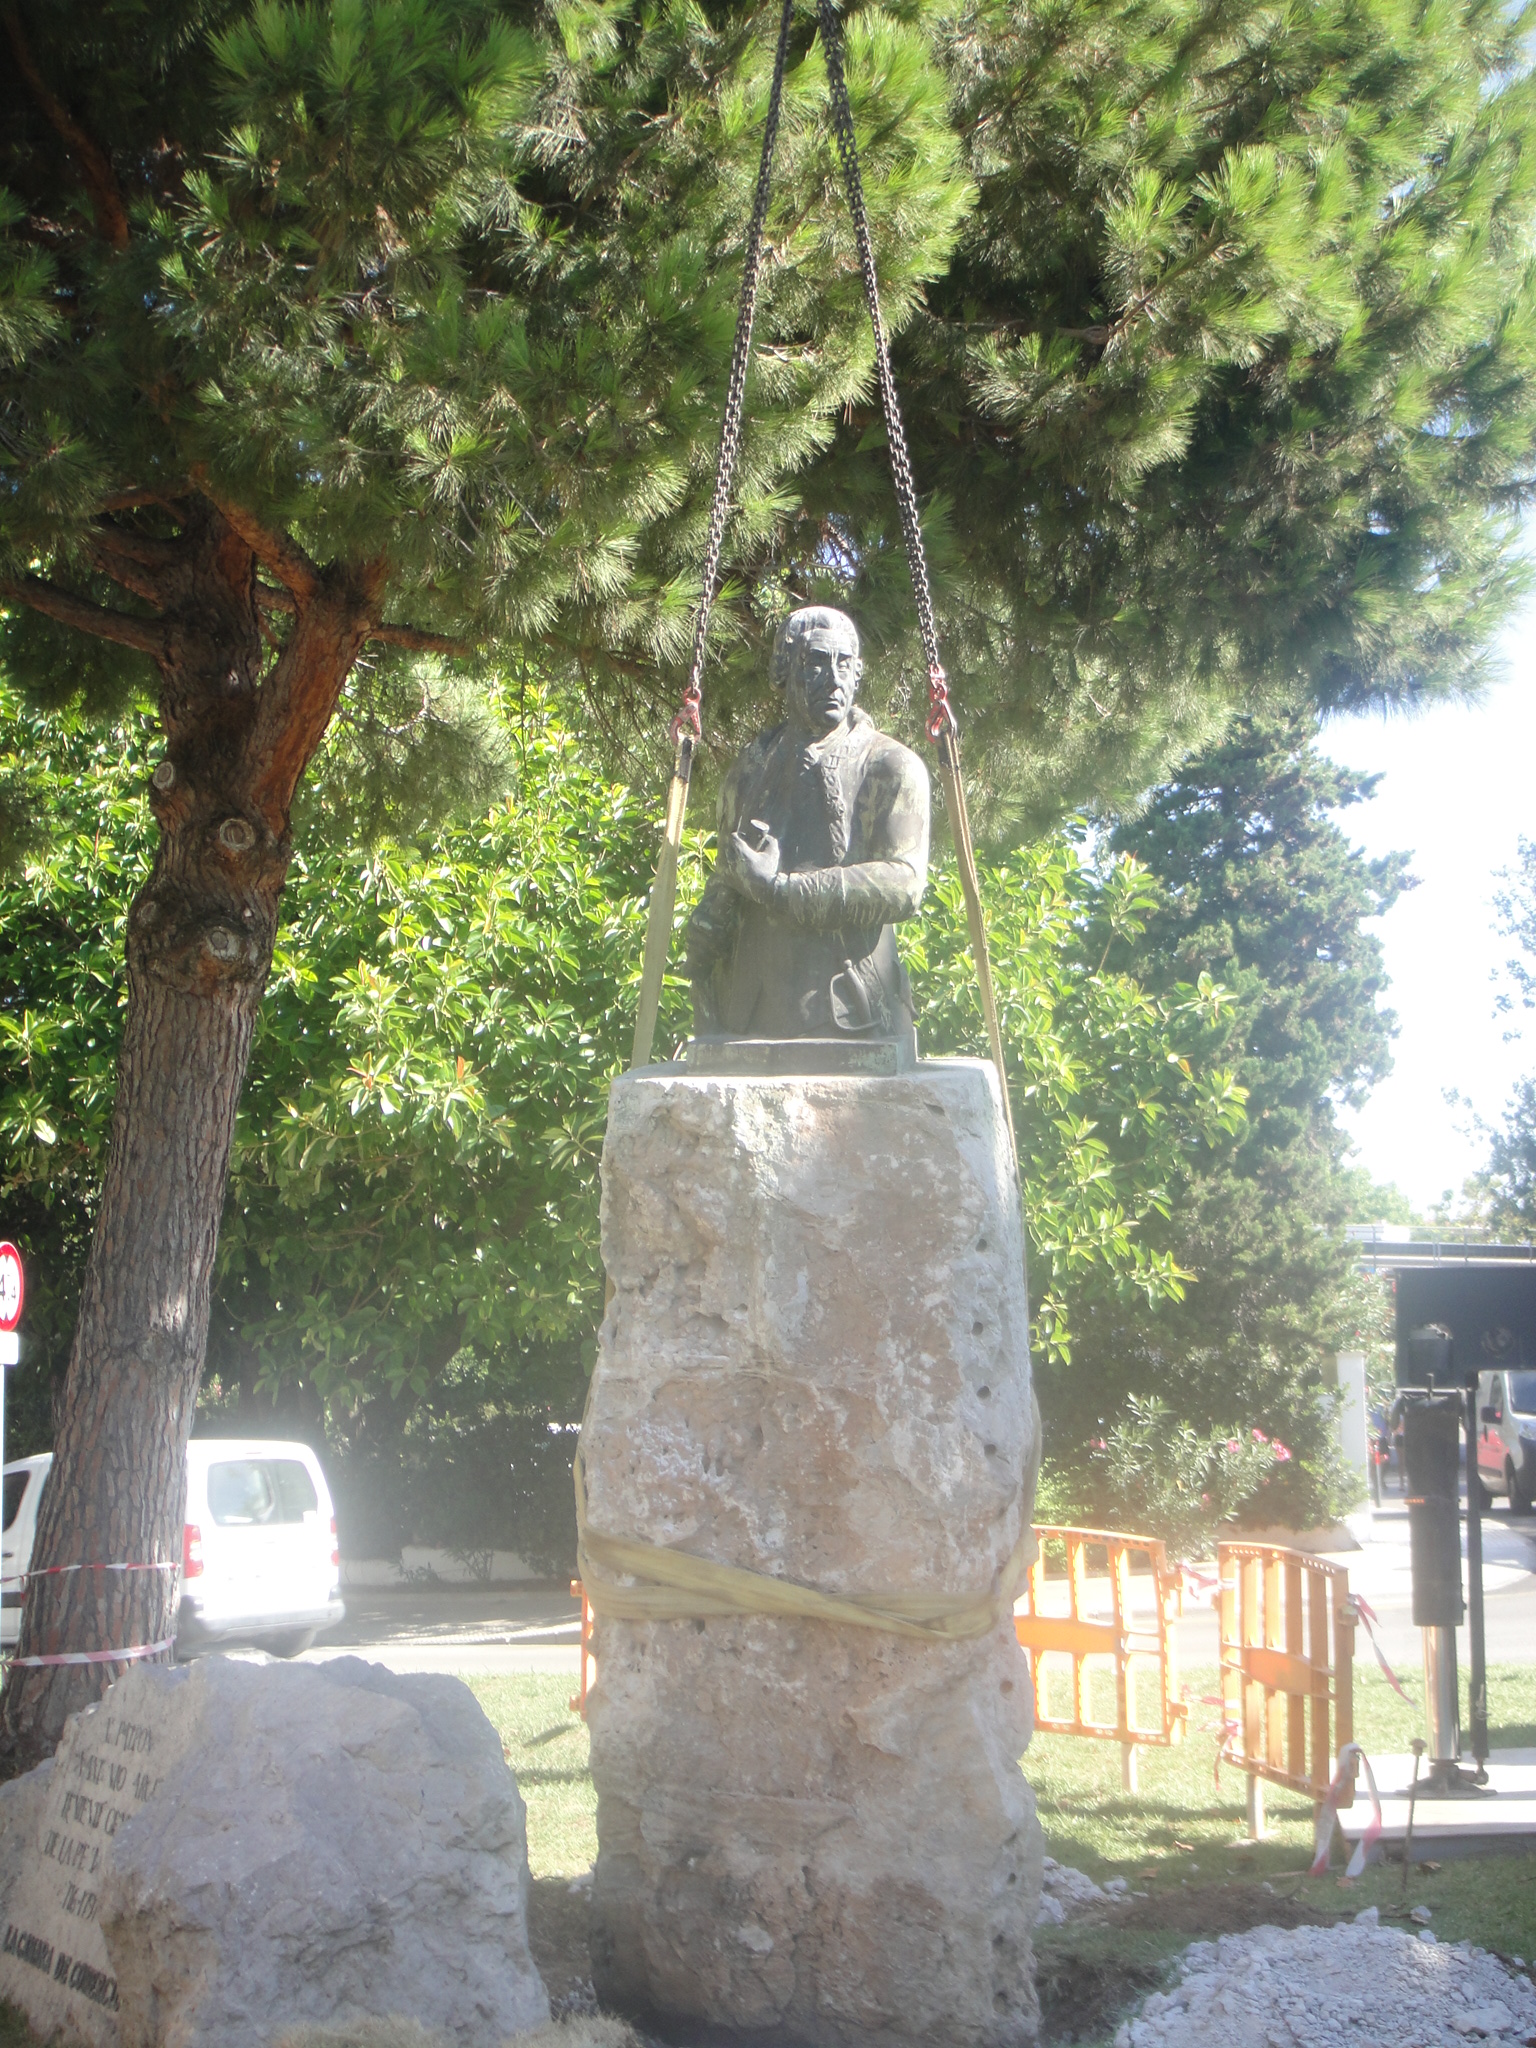 L'APB cedeix el bust del Tinent General Antonio Barceló a la parròquia de Santa Creu amb motiu del tercer centenari del seu naixement